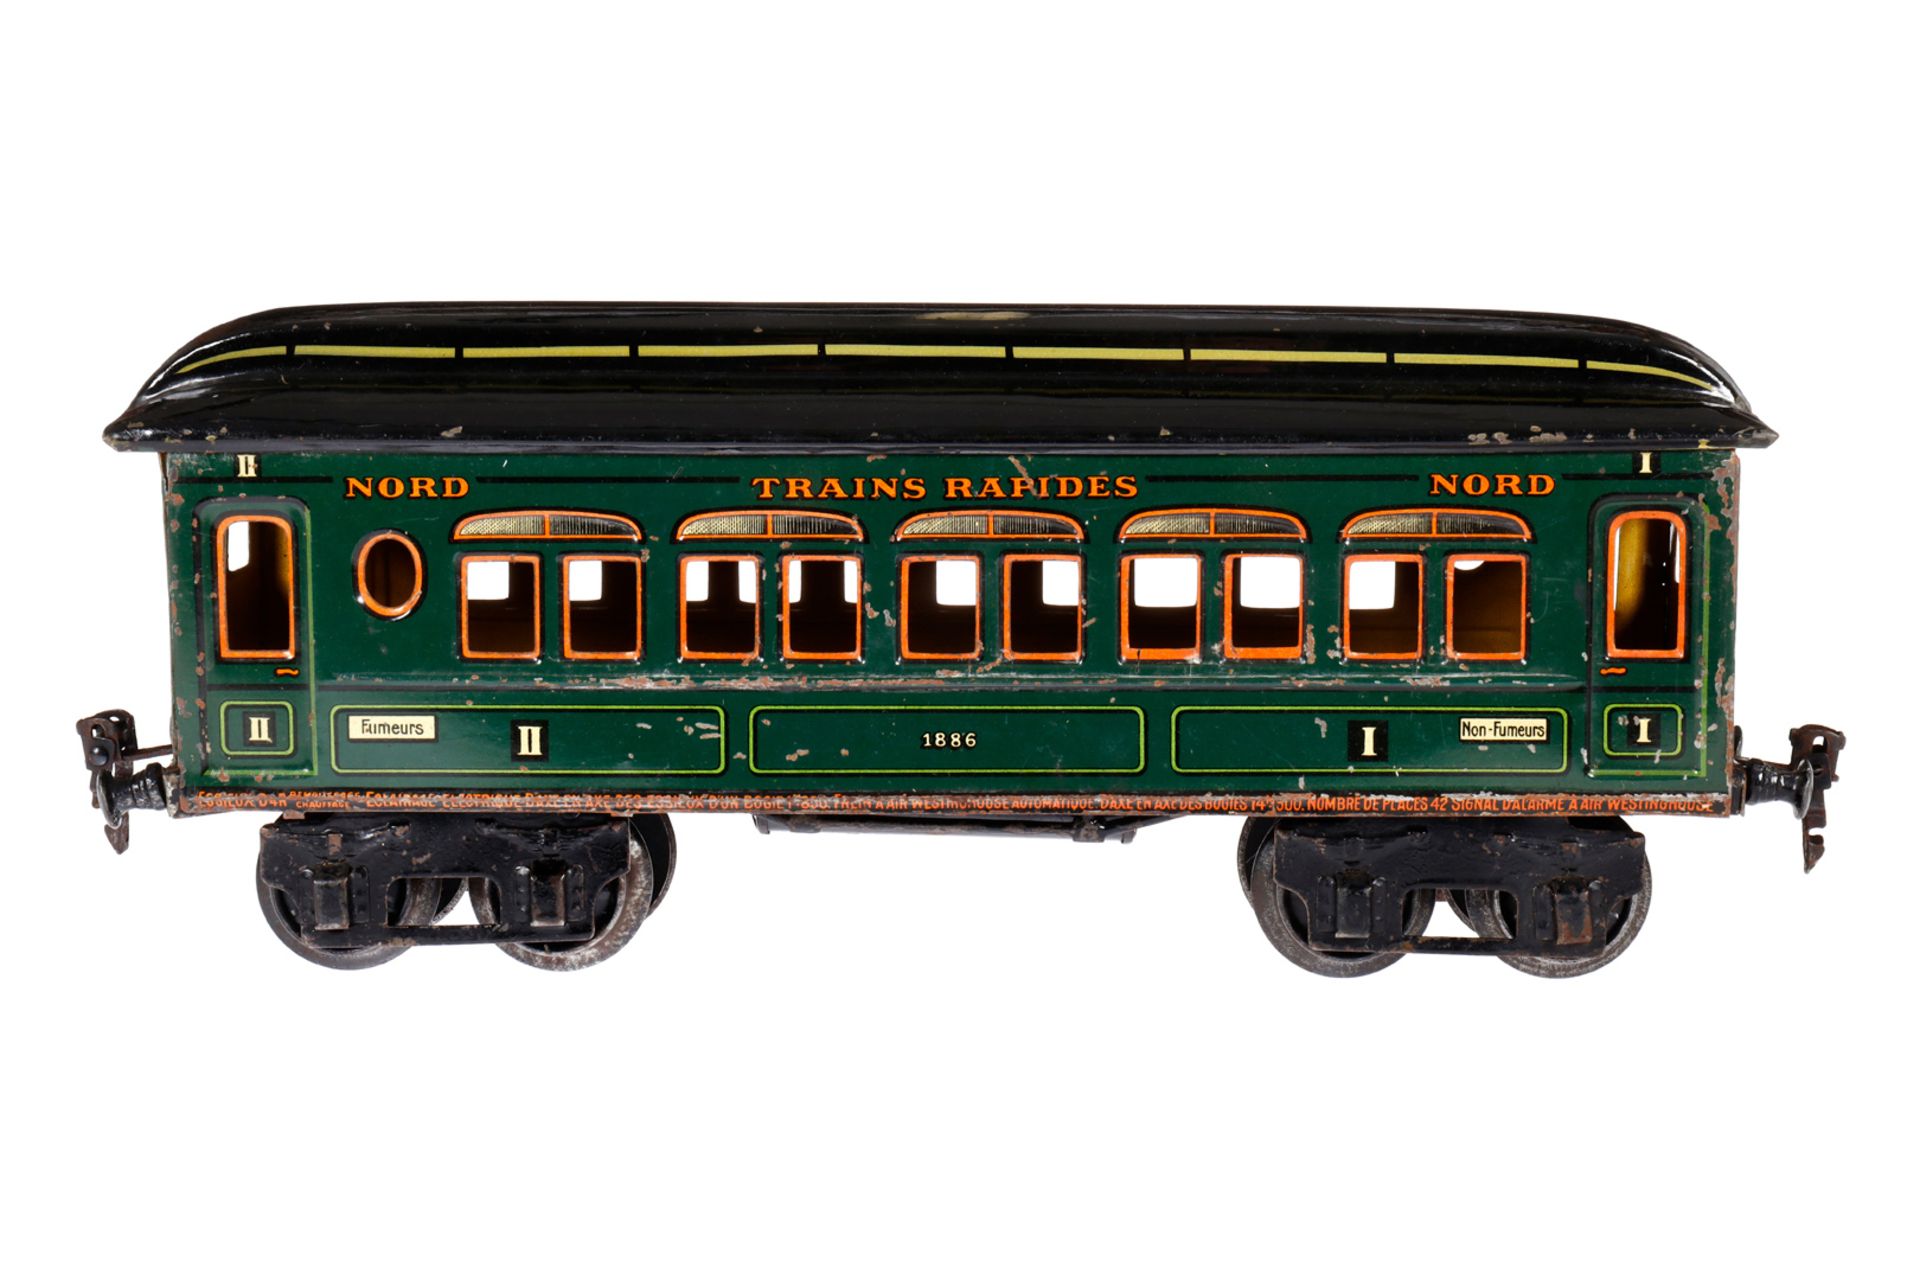 Märklin franz. Personenwagen ”Trains Rapides” 1886, Spur 1, CL, LS und gealterter Lack, L 32,5, Z 3